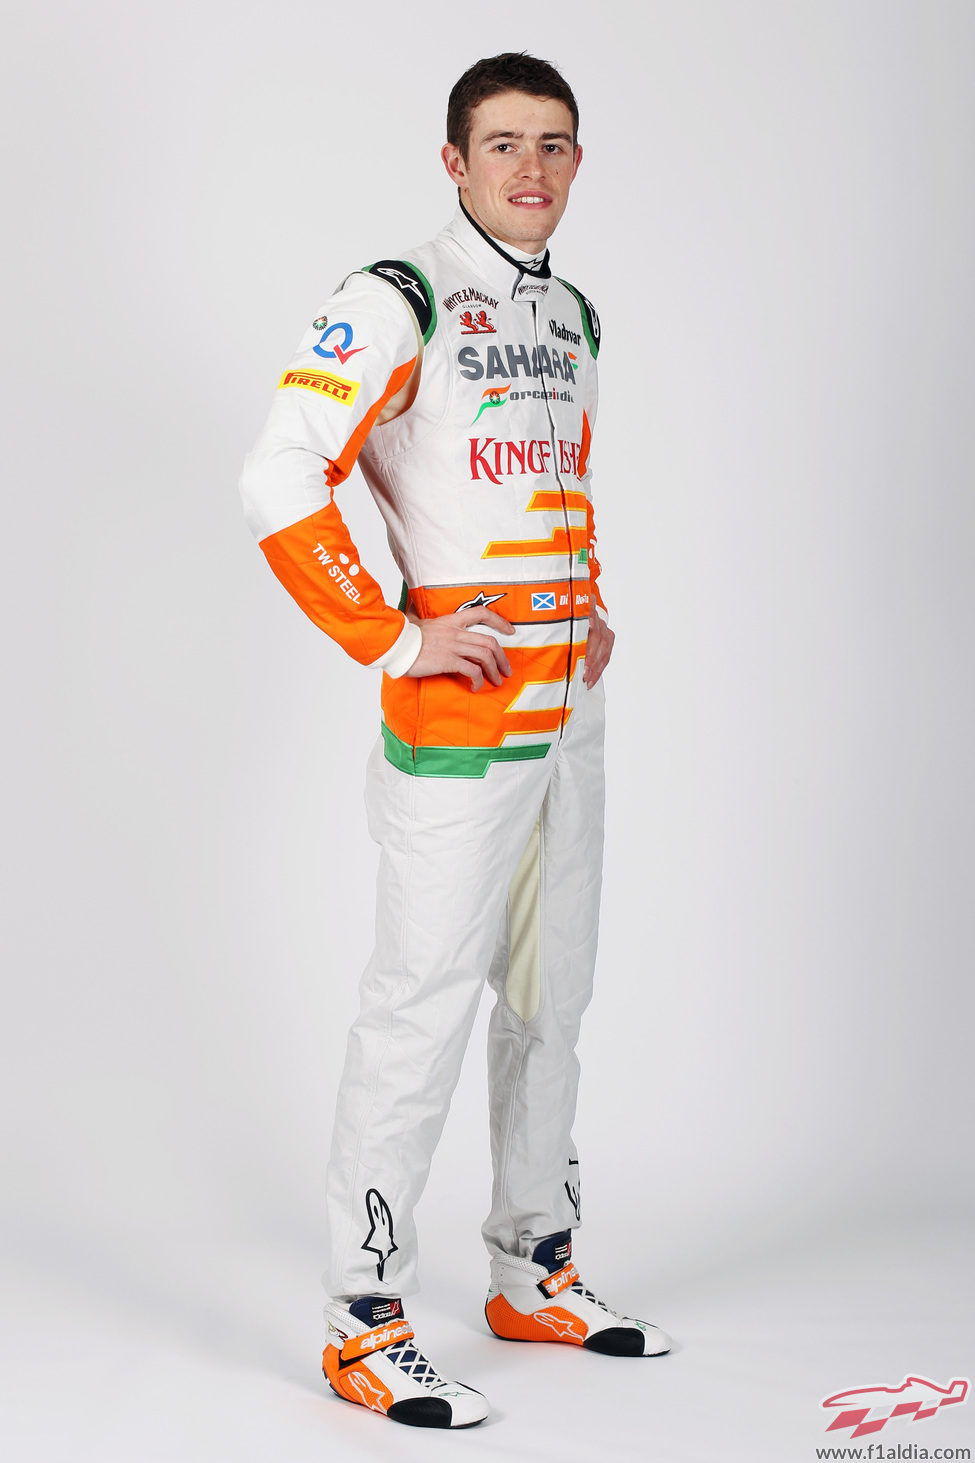 Paul di Resta, piloto de Force India en la temporada 2013